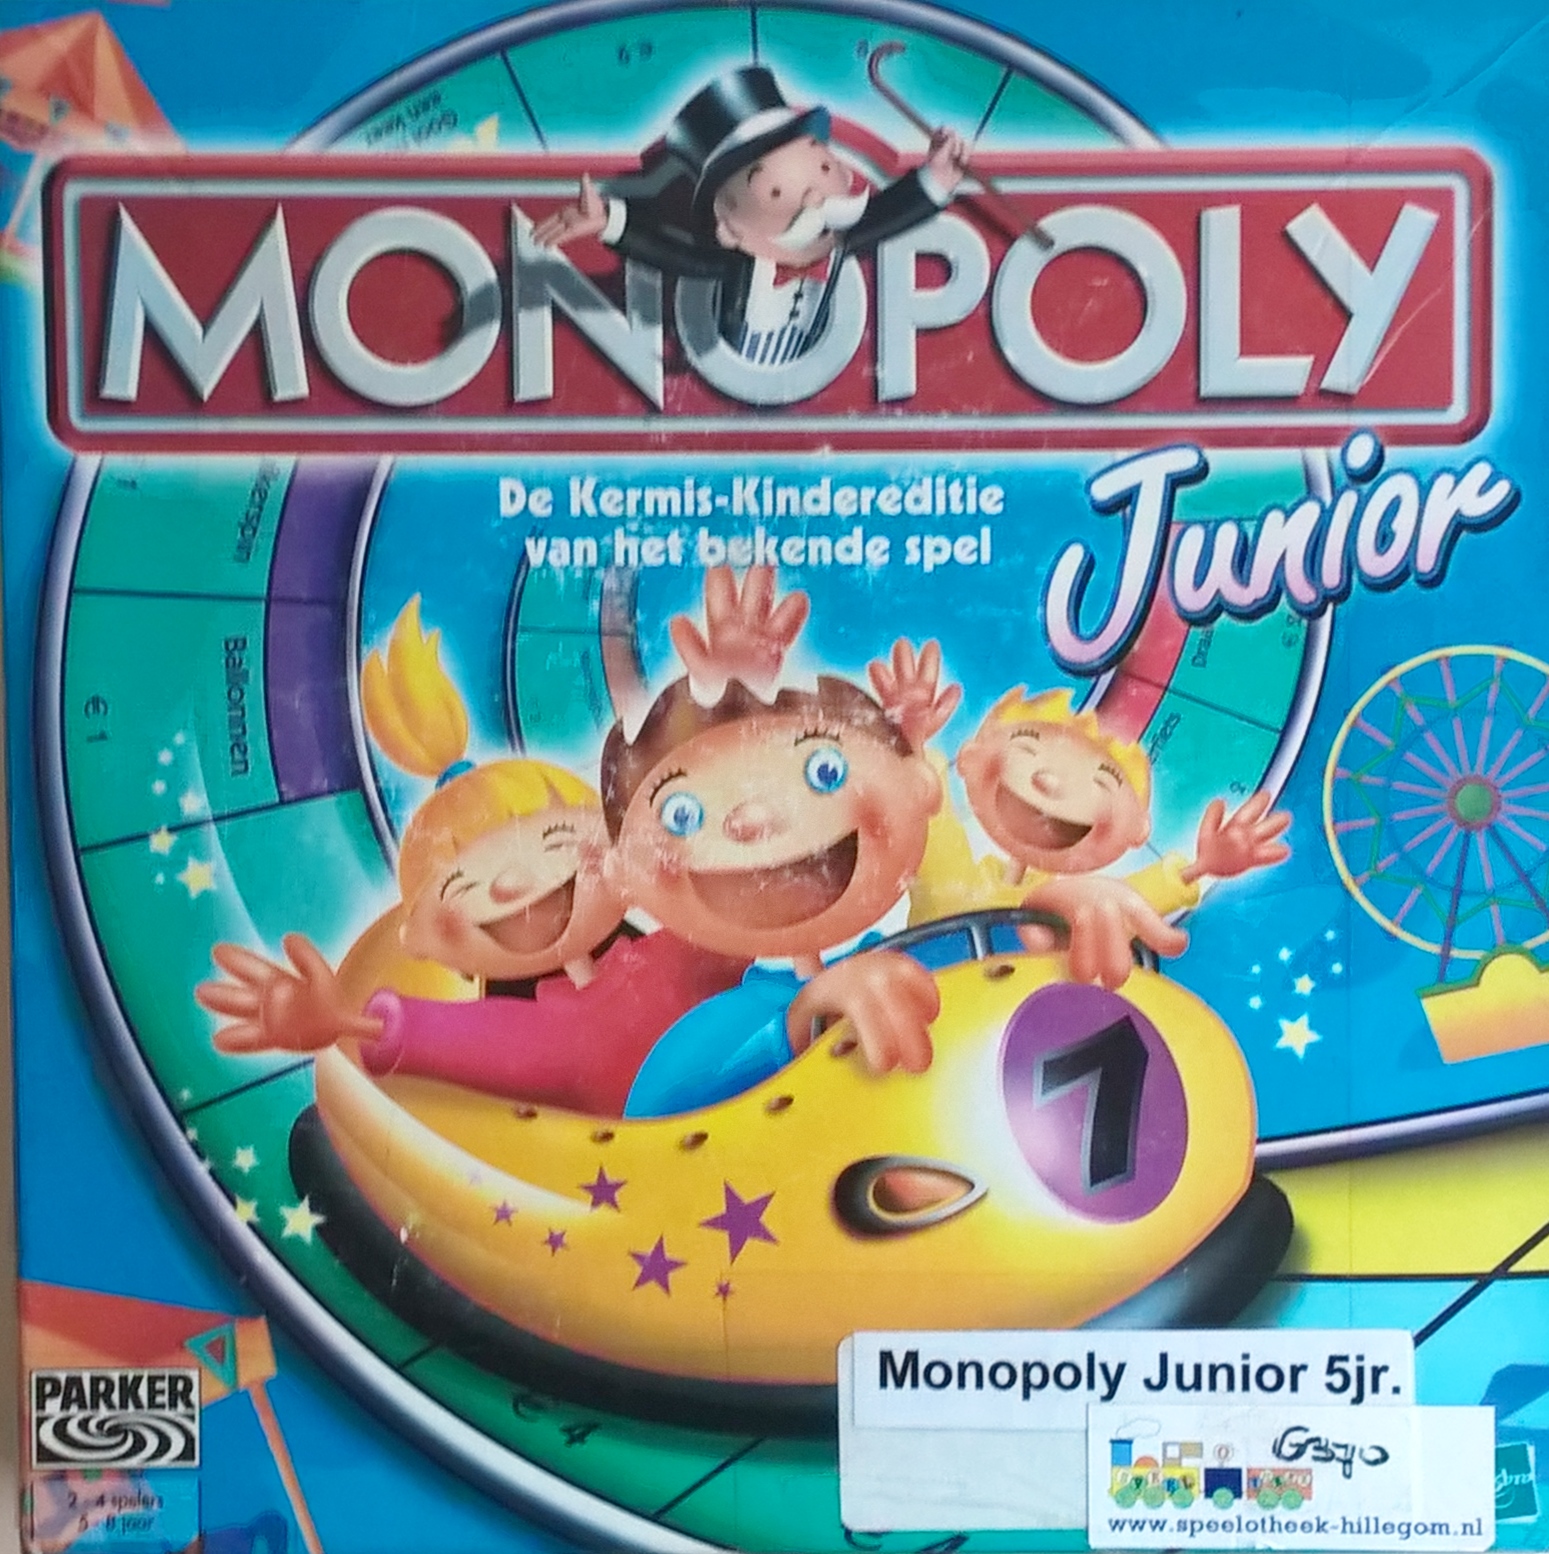 monopoly junior amazon